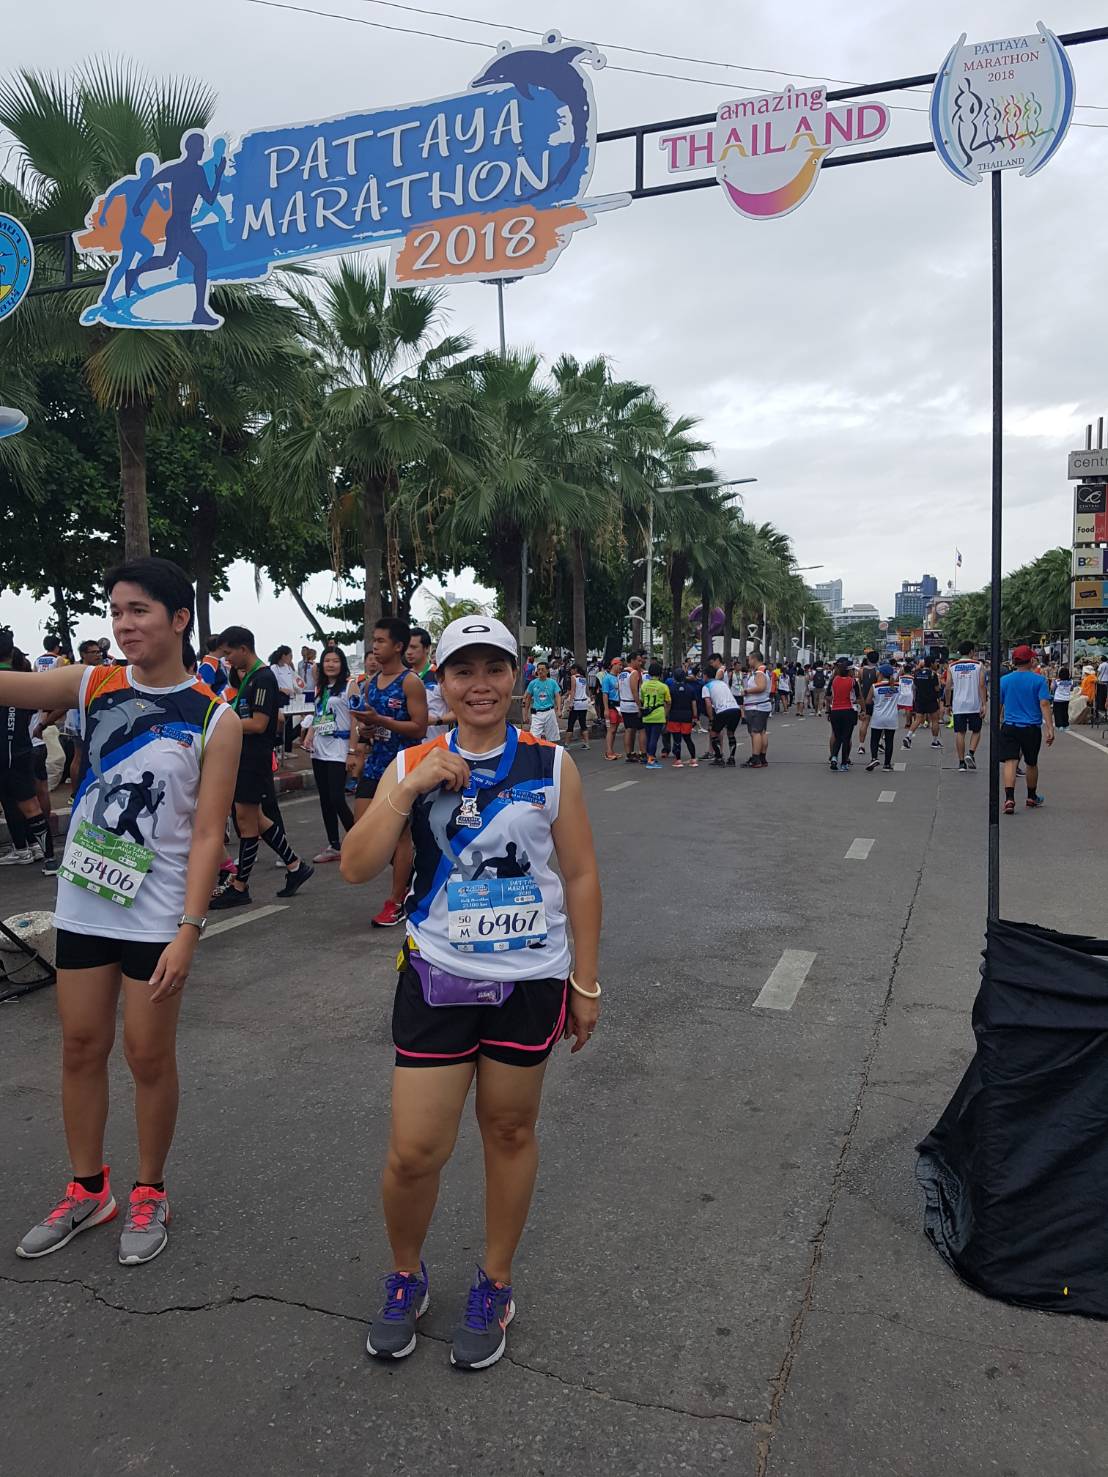 Etwa 10.000 Läufer aus aller Welt nahm am 27. Pattaya Marathon 2018 teil